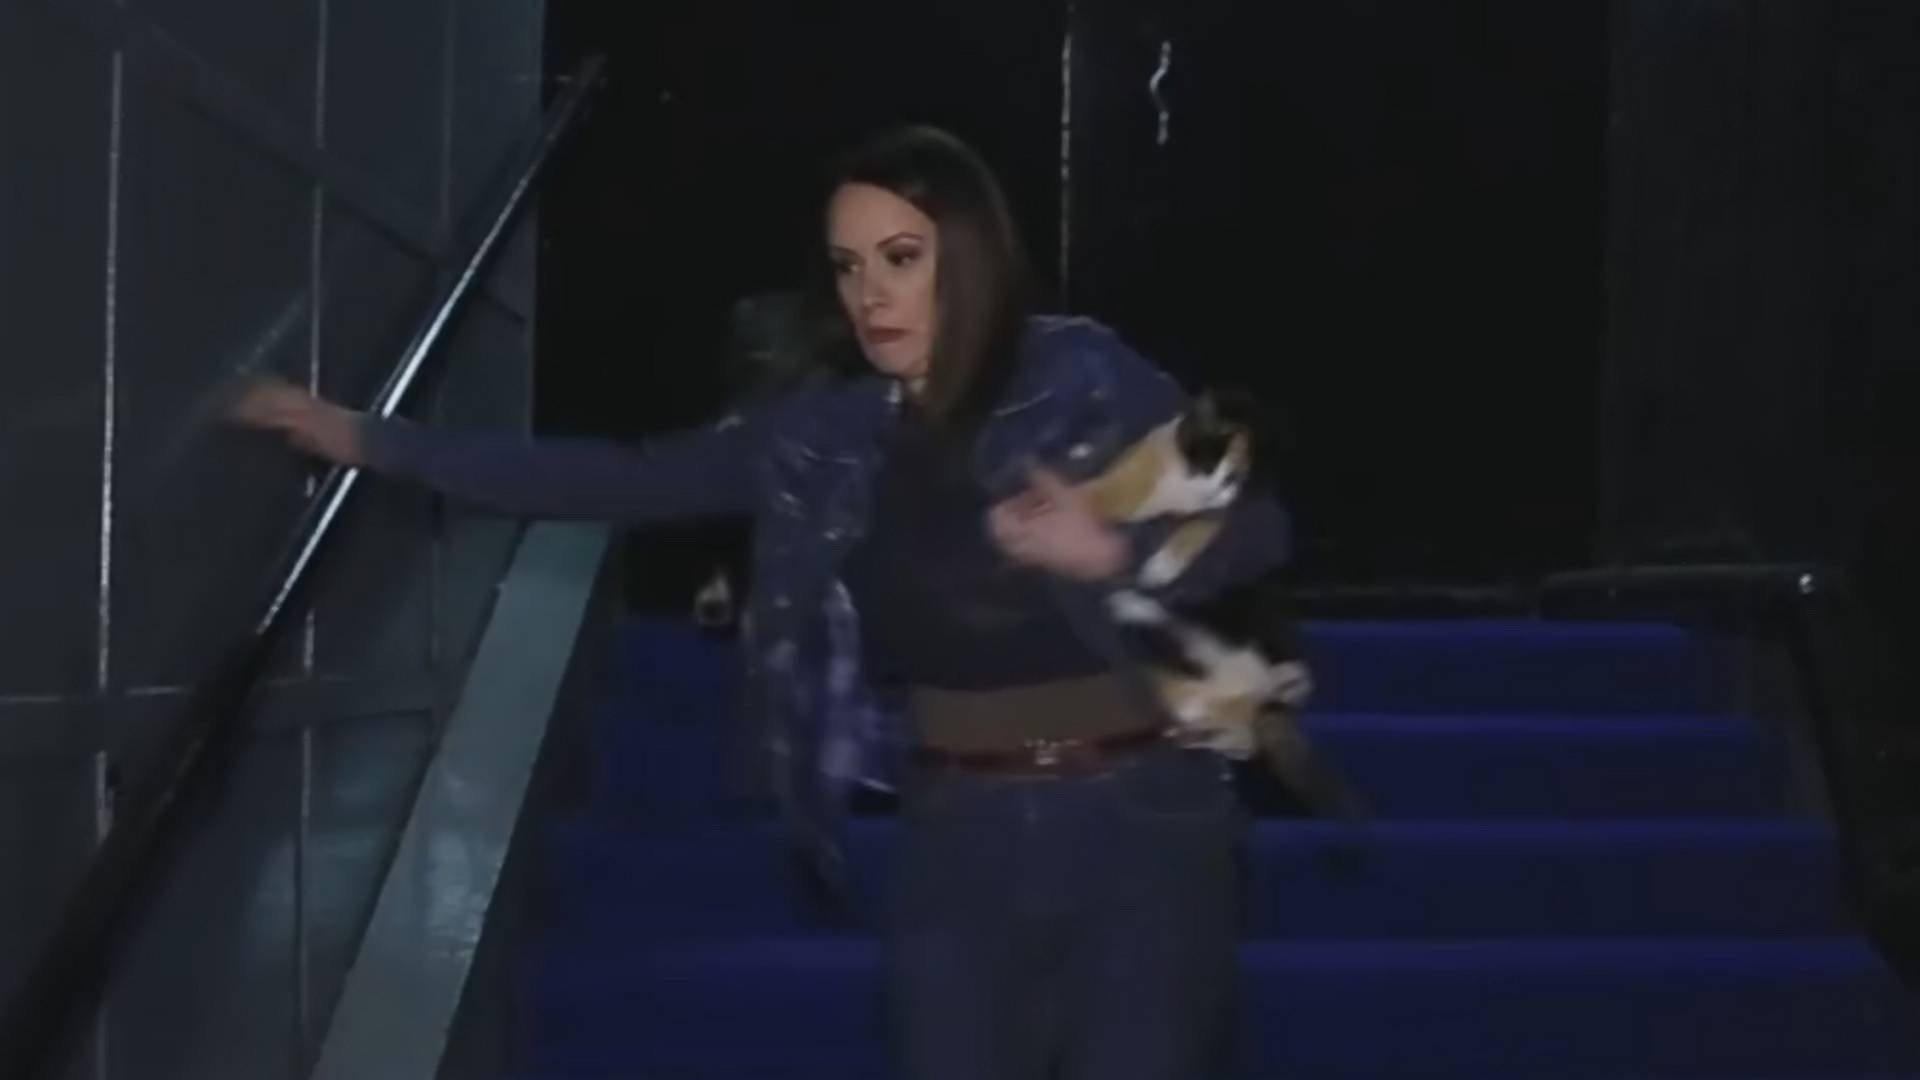 Novinarka Katarina Lazarević u epizodi: "Padam niz stepenice, ali sve za dobar prilog"